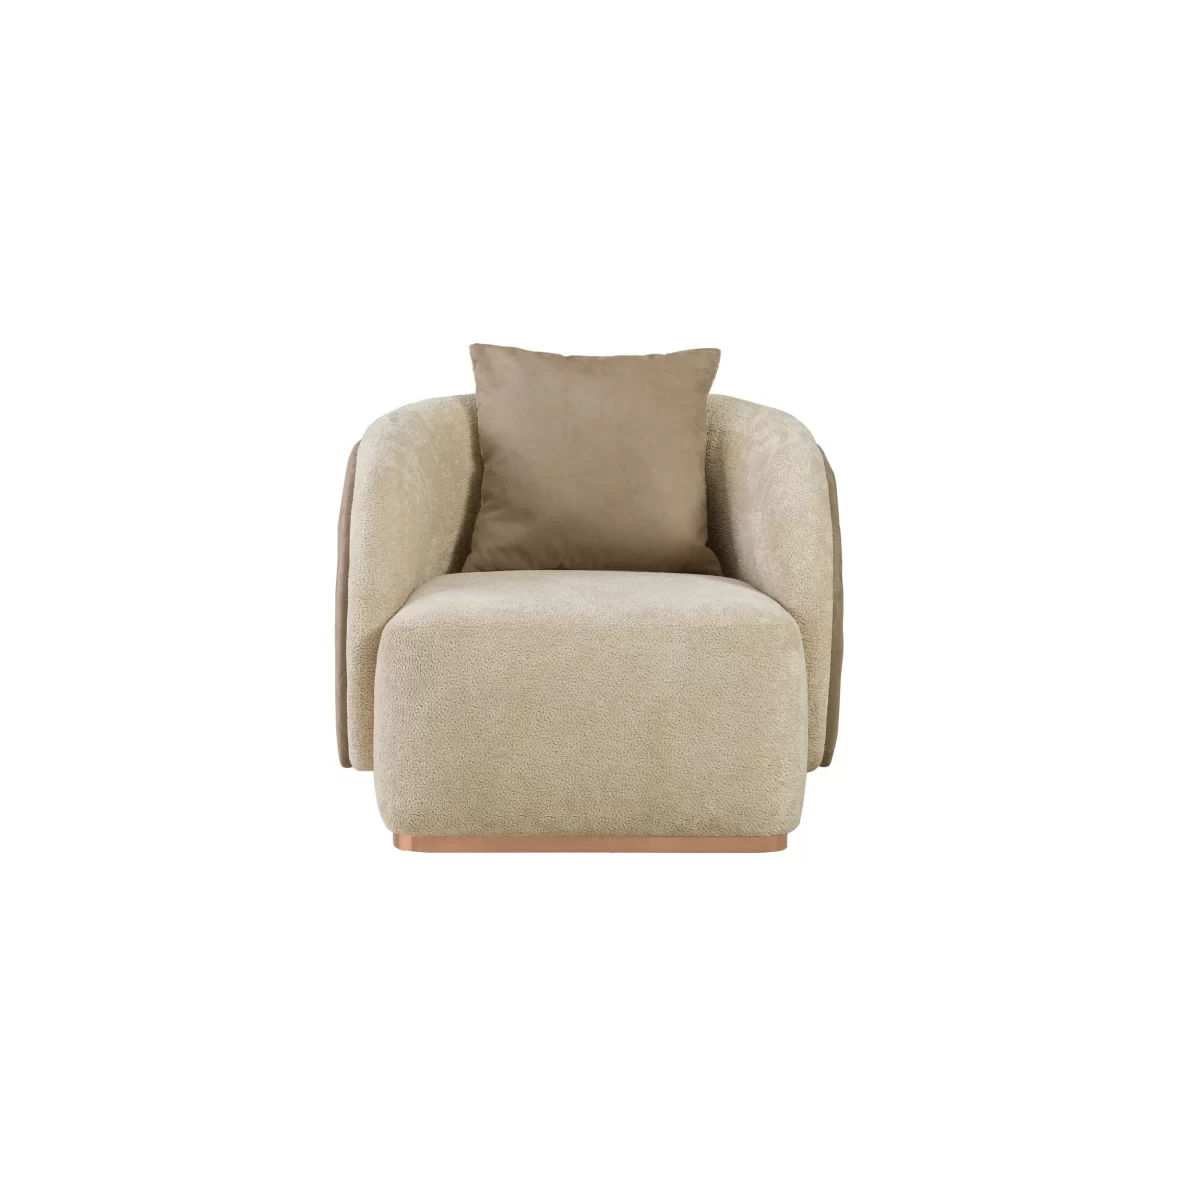 Aerro Sofa Set Premium Living Room Furniture 5